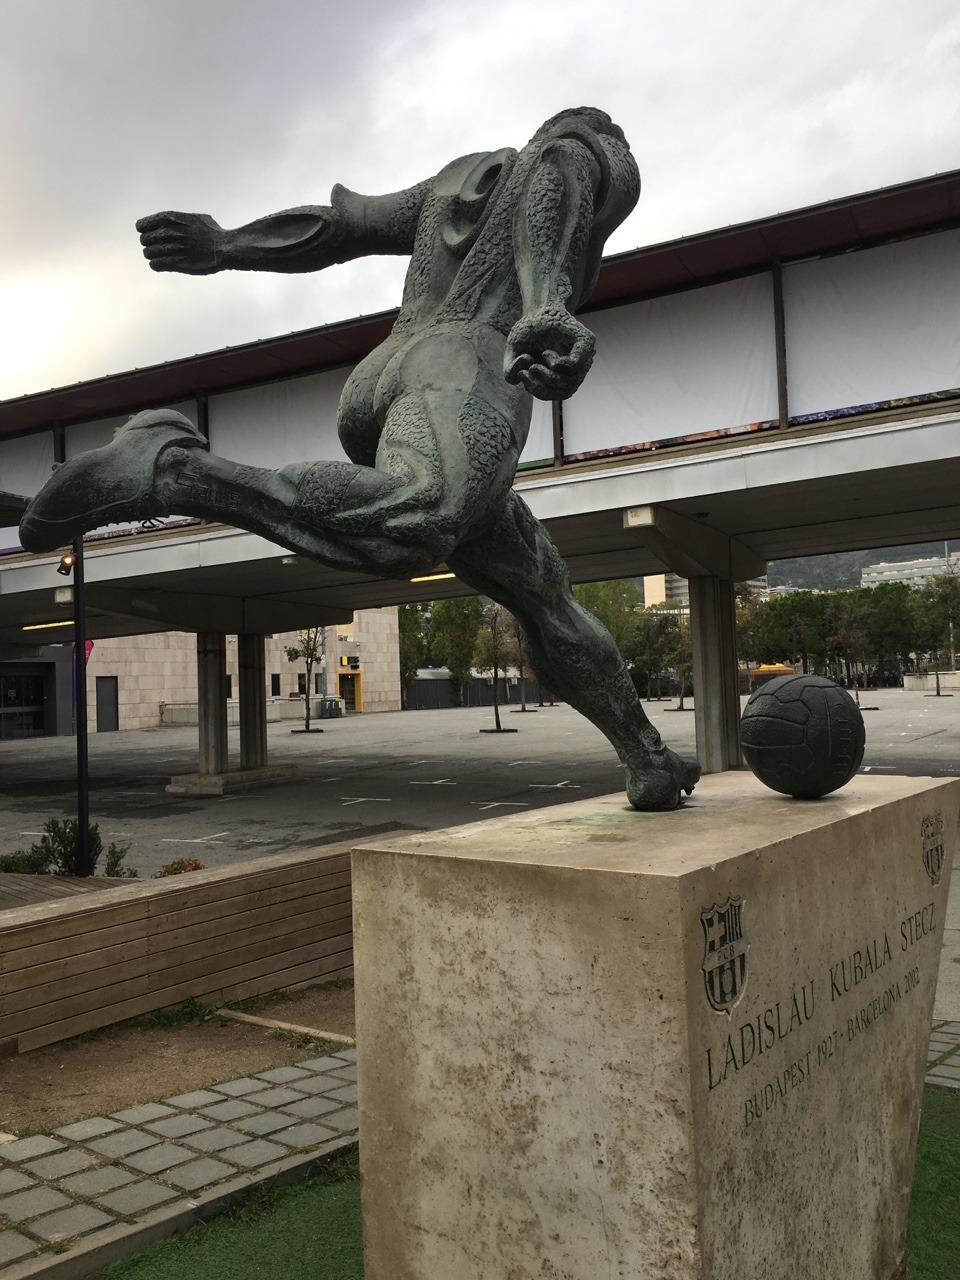 Грем Хантер: Біля стадіону Камп Ноу встановлено вражаючий монумент угорському біженцю Ласло Кубалу, який виступав за Барселону протягом десяти років (130 голів і 10 завойованих трофеїв), а потім двічі ставав біля керма синьо-гранатових